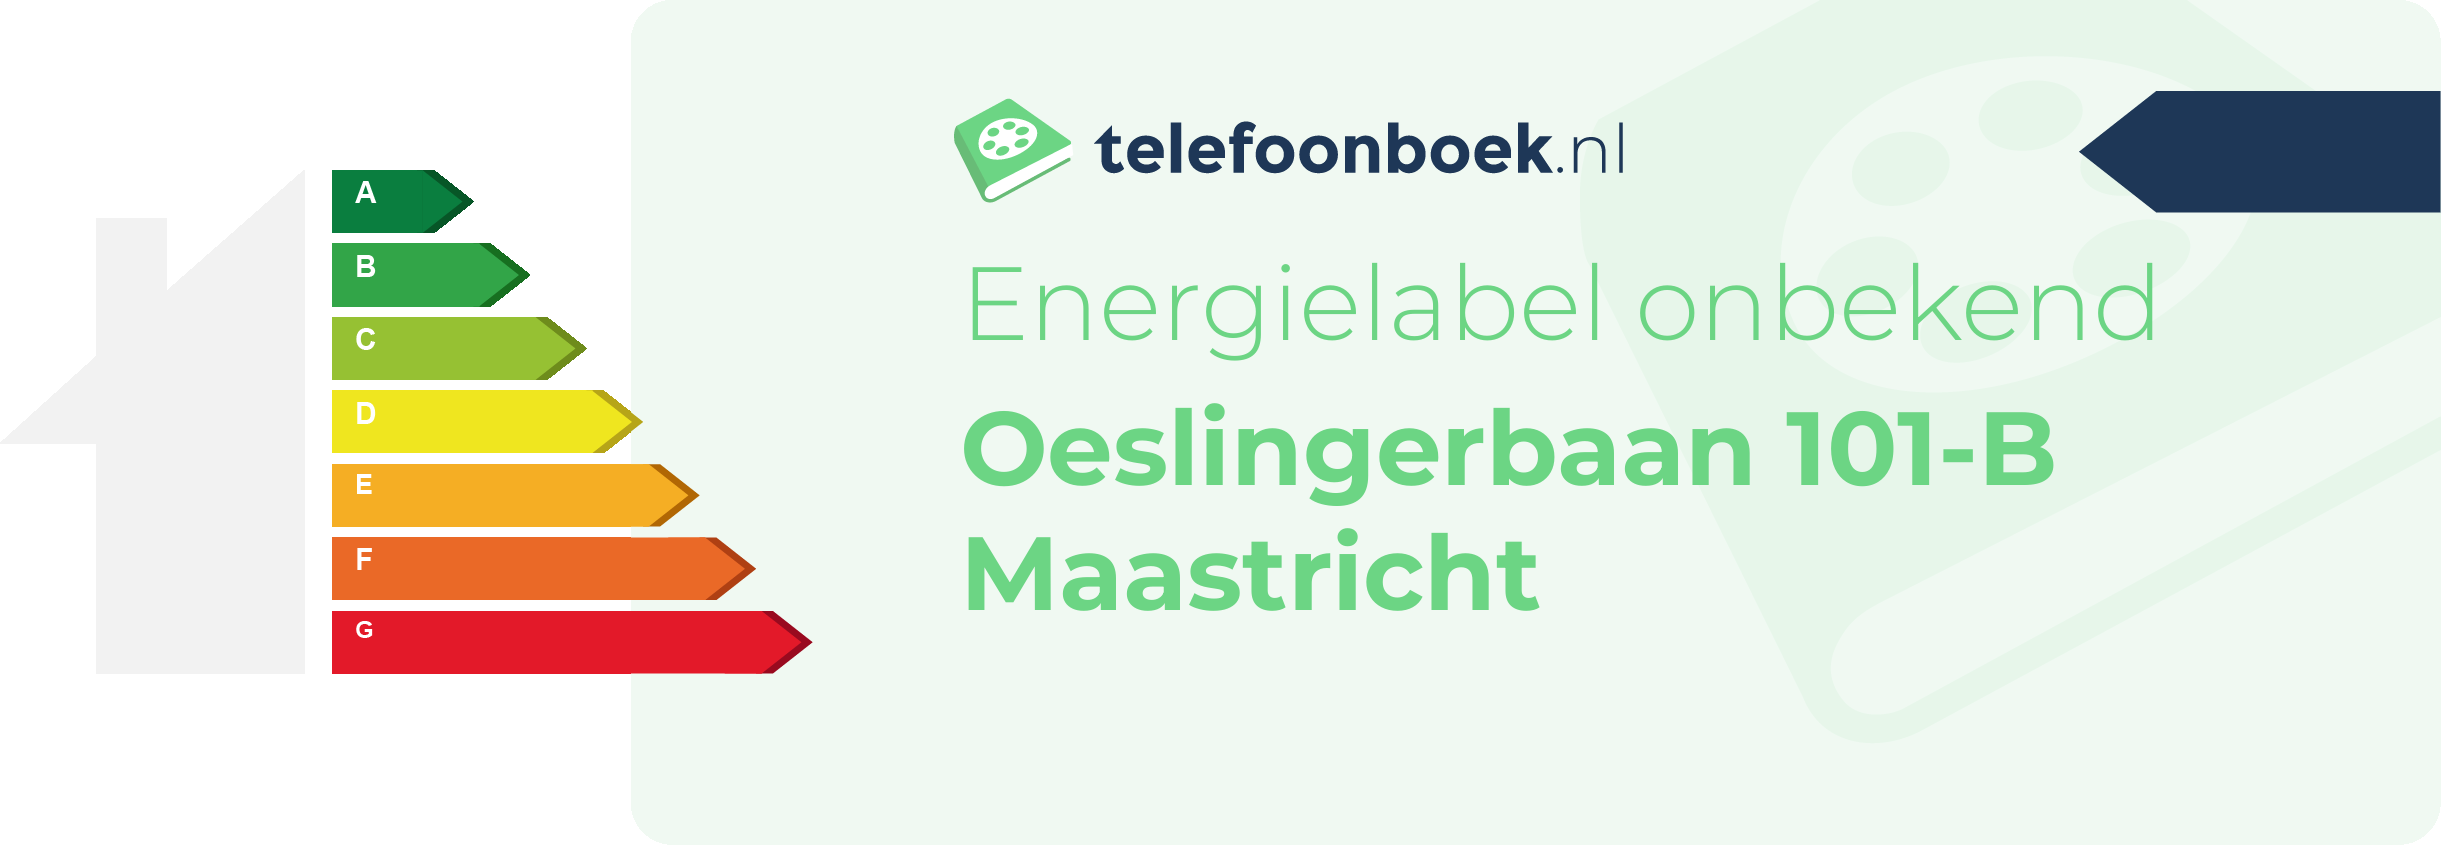 Energielabel Oeslingerbaan 101-B Maastricht